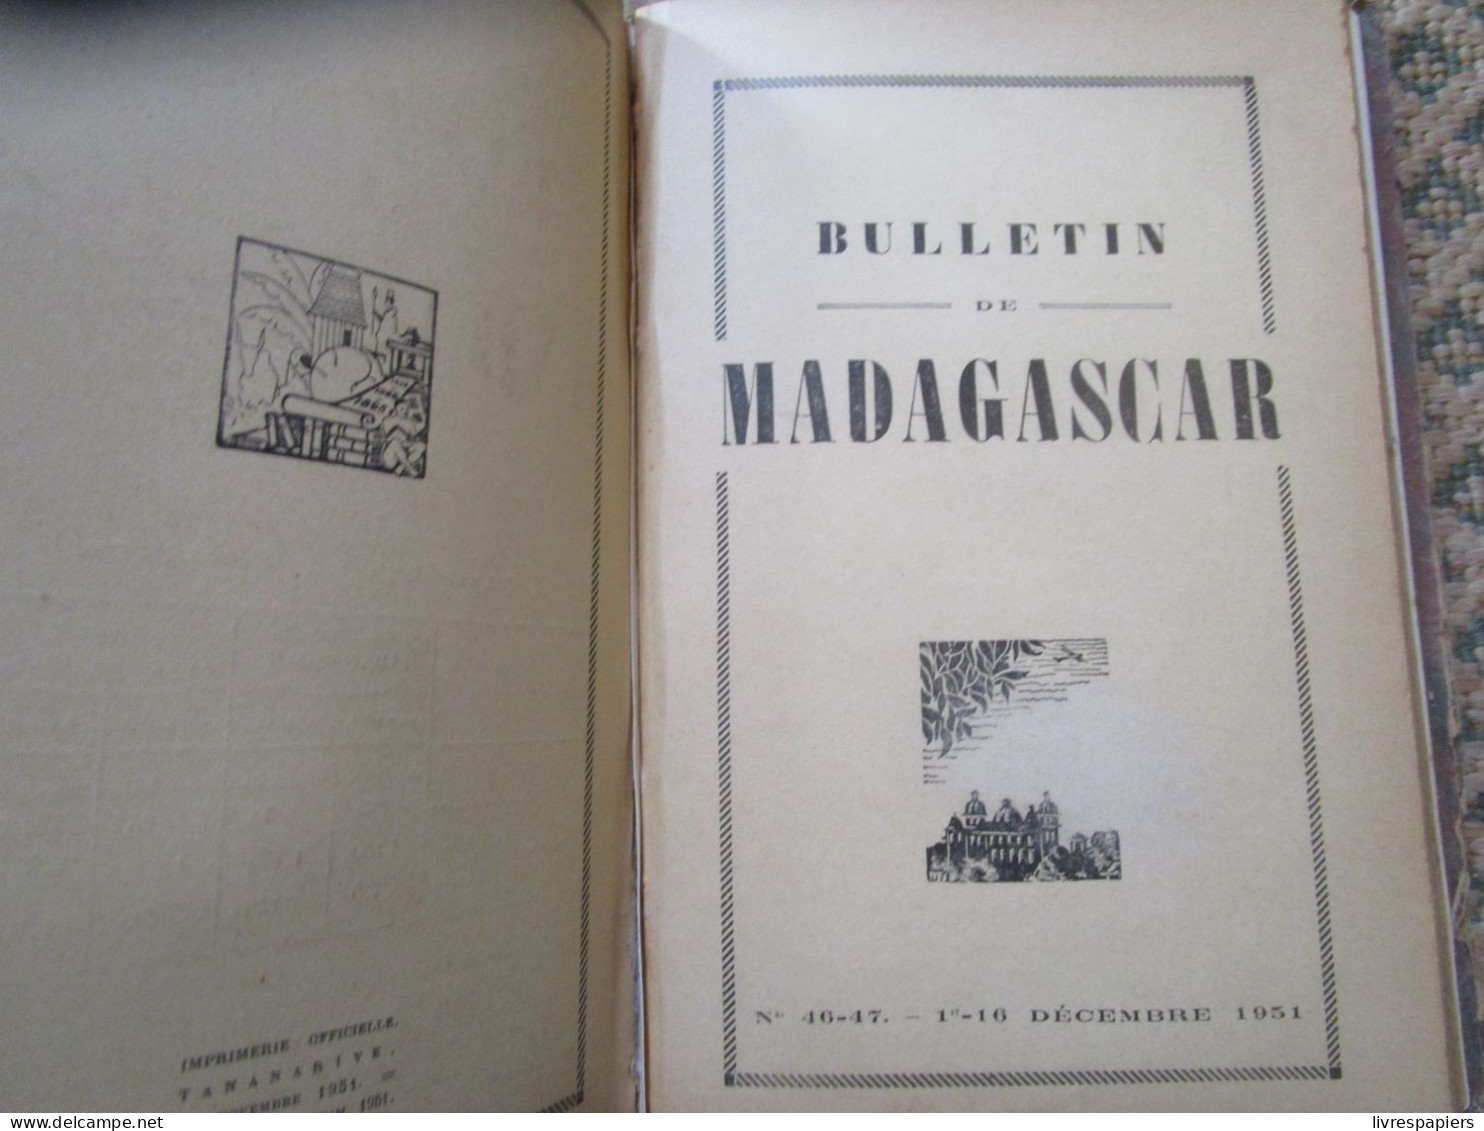 Madagascar BULLETIN DE MADAGASCAR 1951 Complet Janv à Dec , Relier Couvertures Conservées - Storia